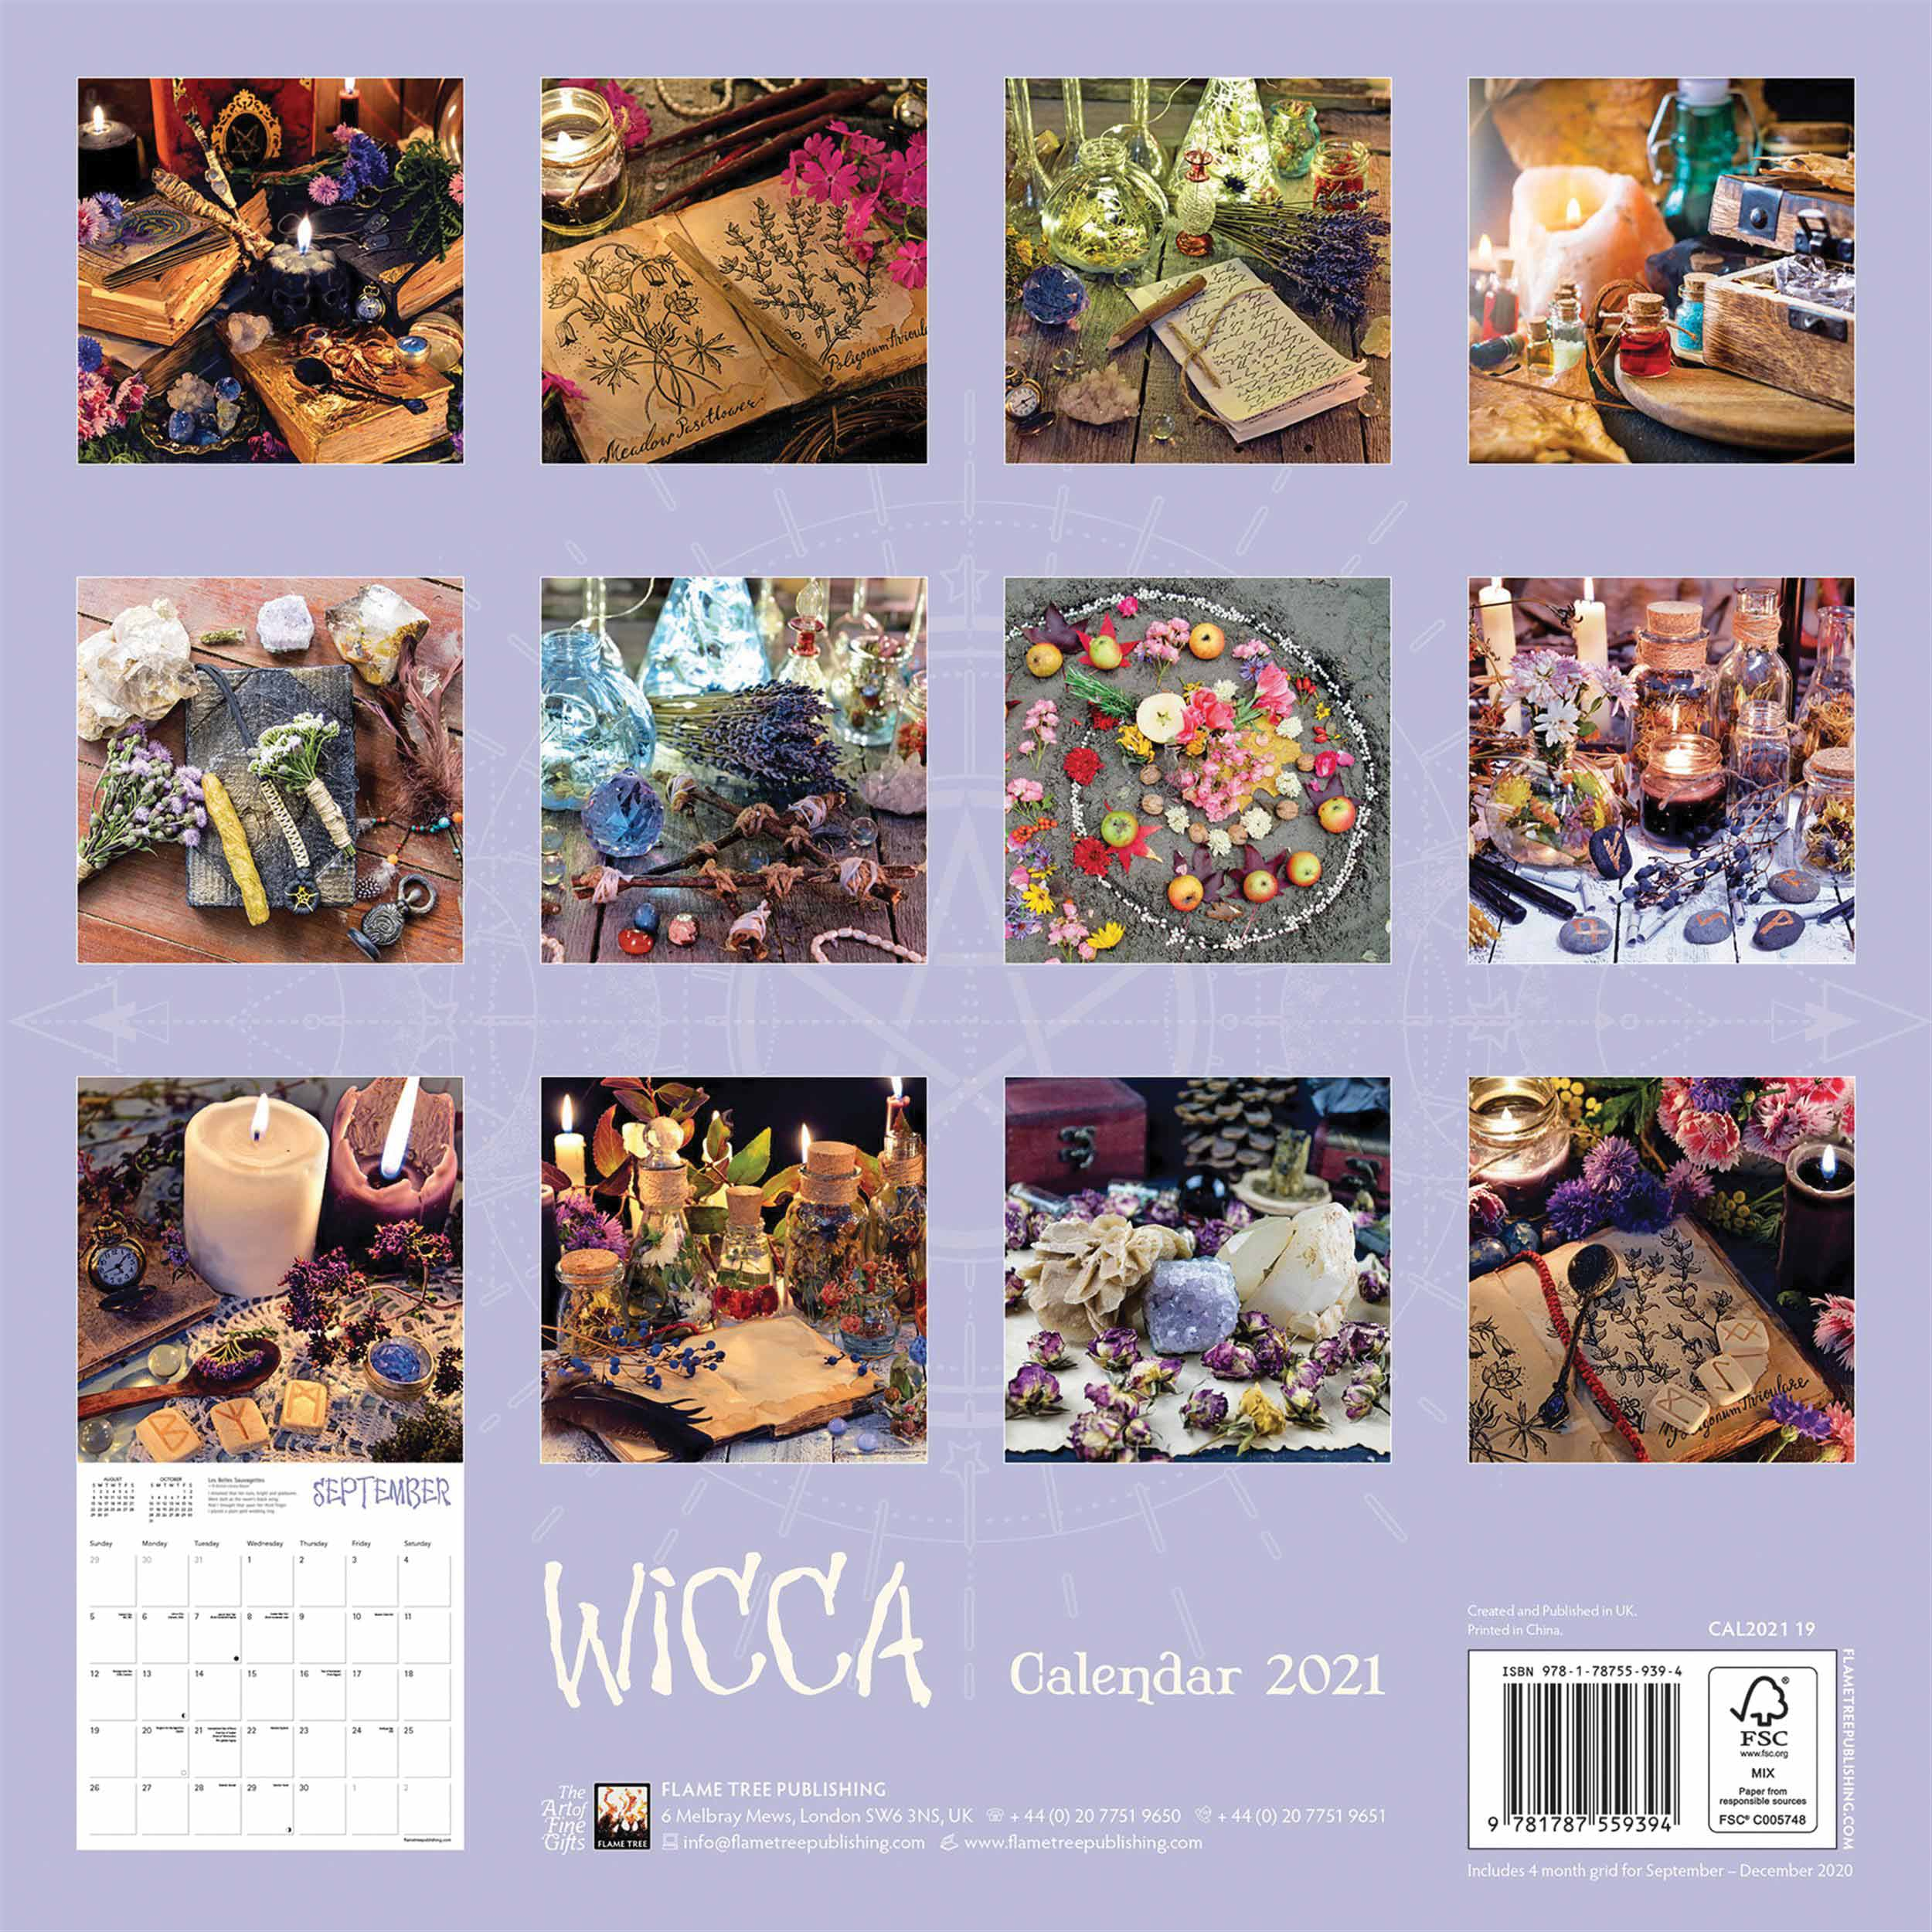 Wicca Calendar 2021 At Calendar Club